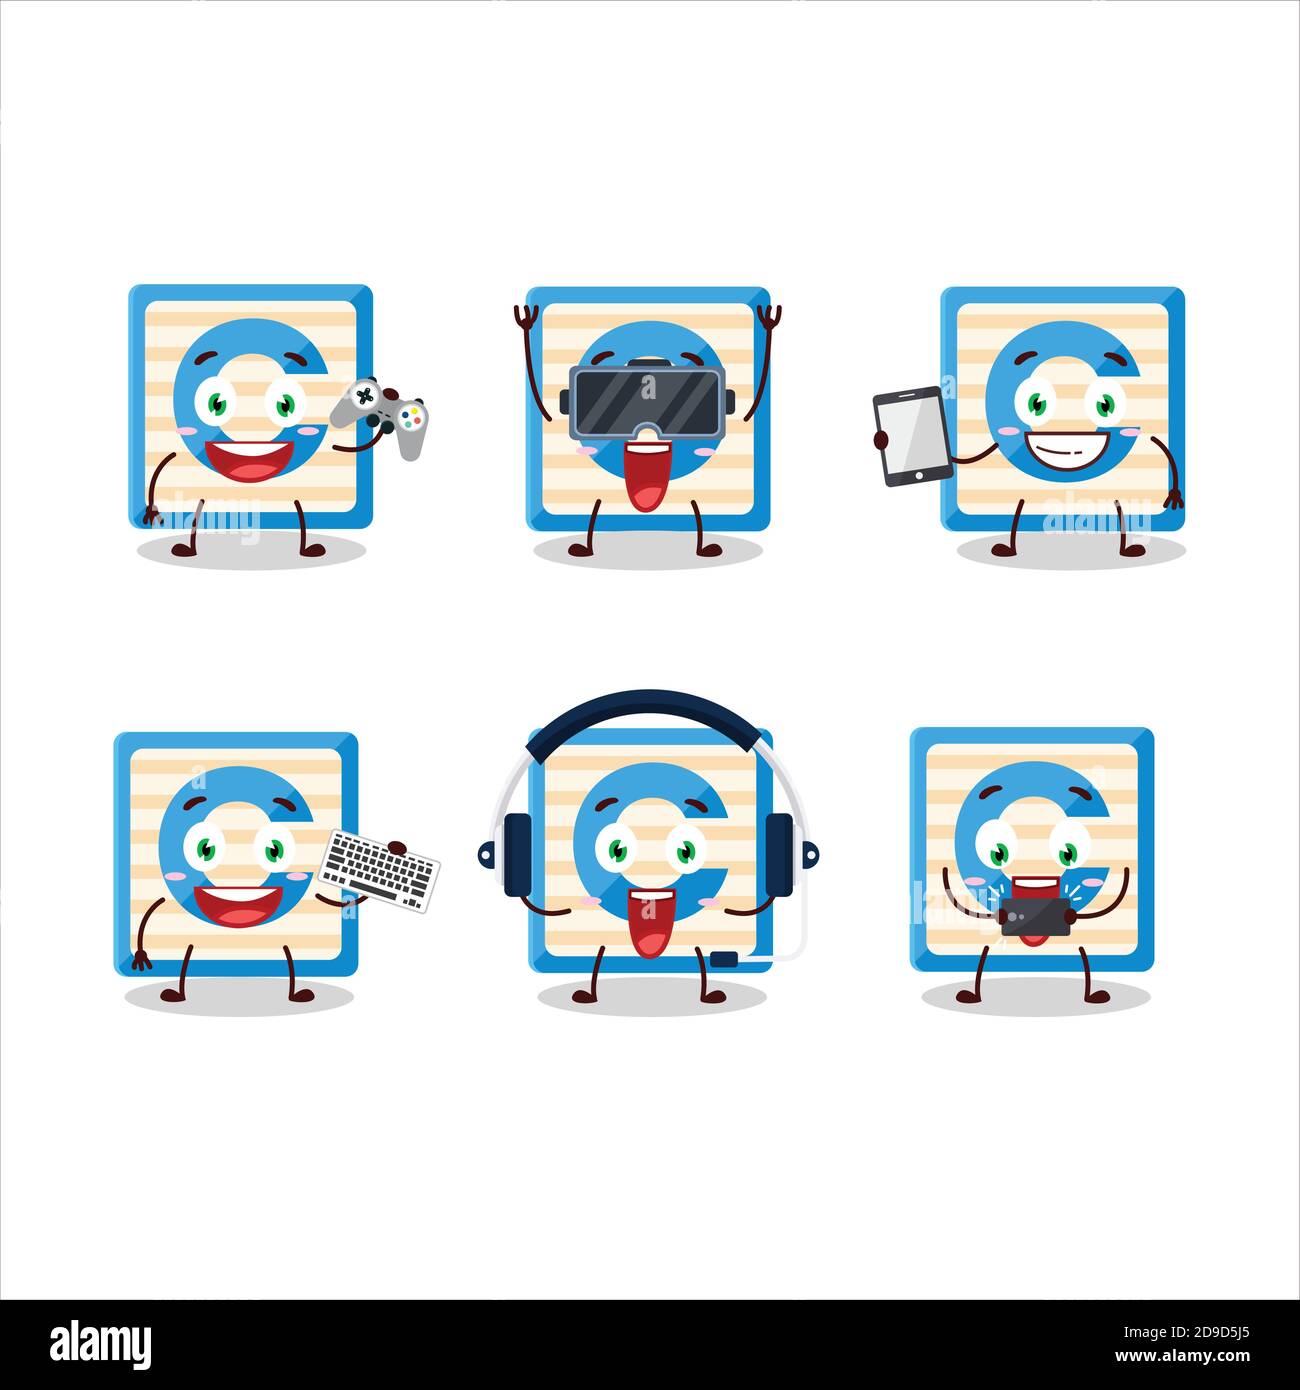 Le personnage de dessin animé du bloc de jouets C joue à des jeux avec divers émoticônes mignons Illustration de Vecteur